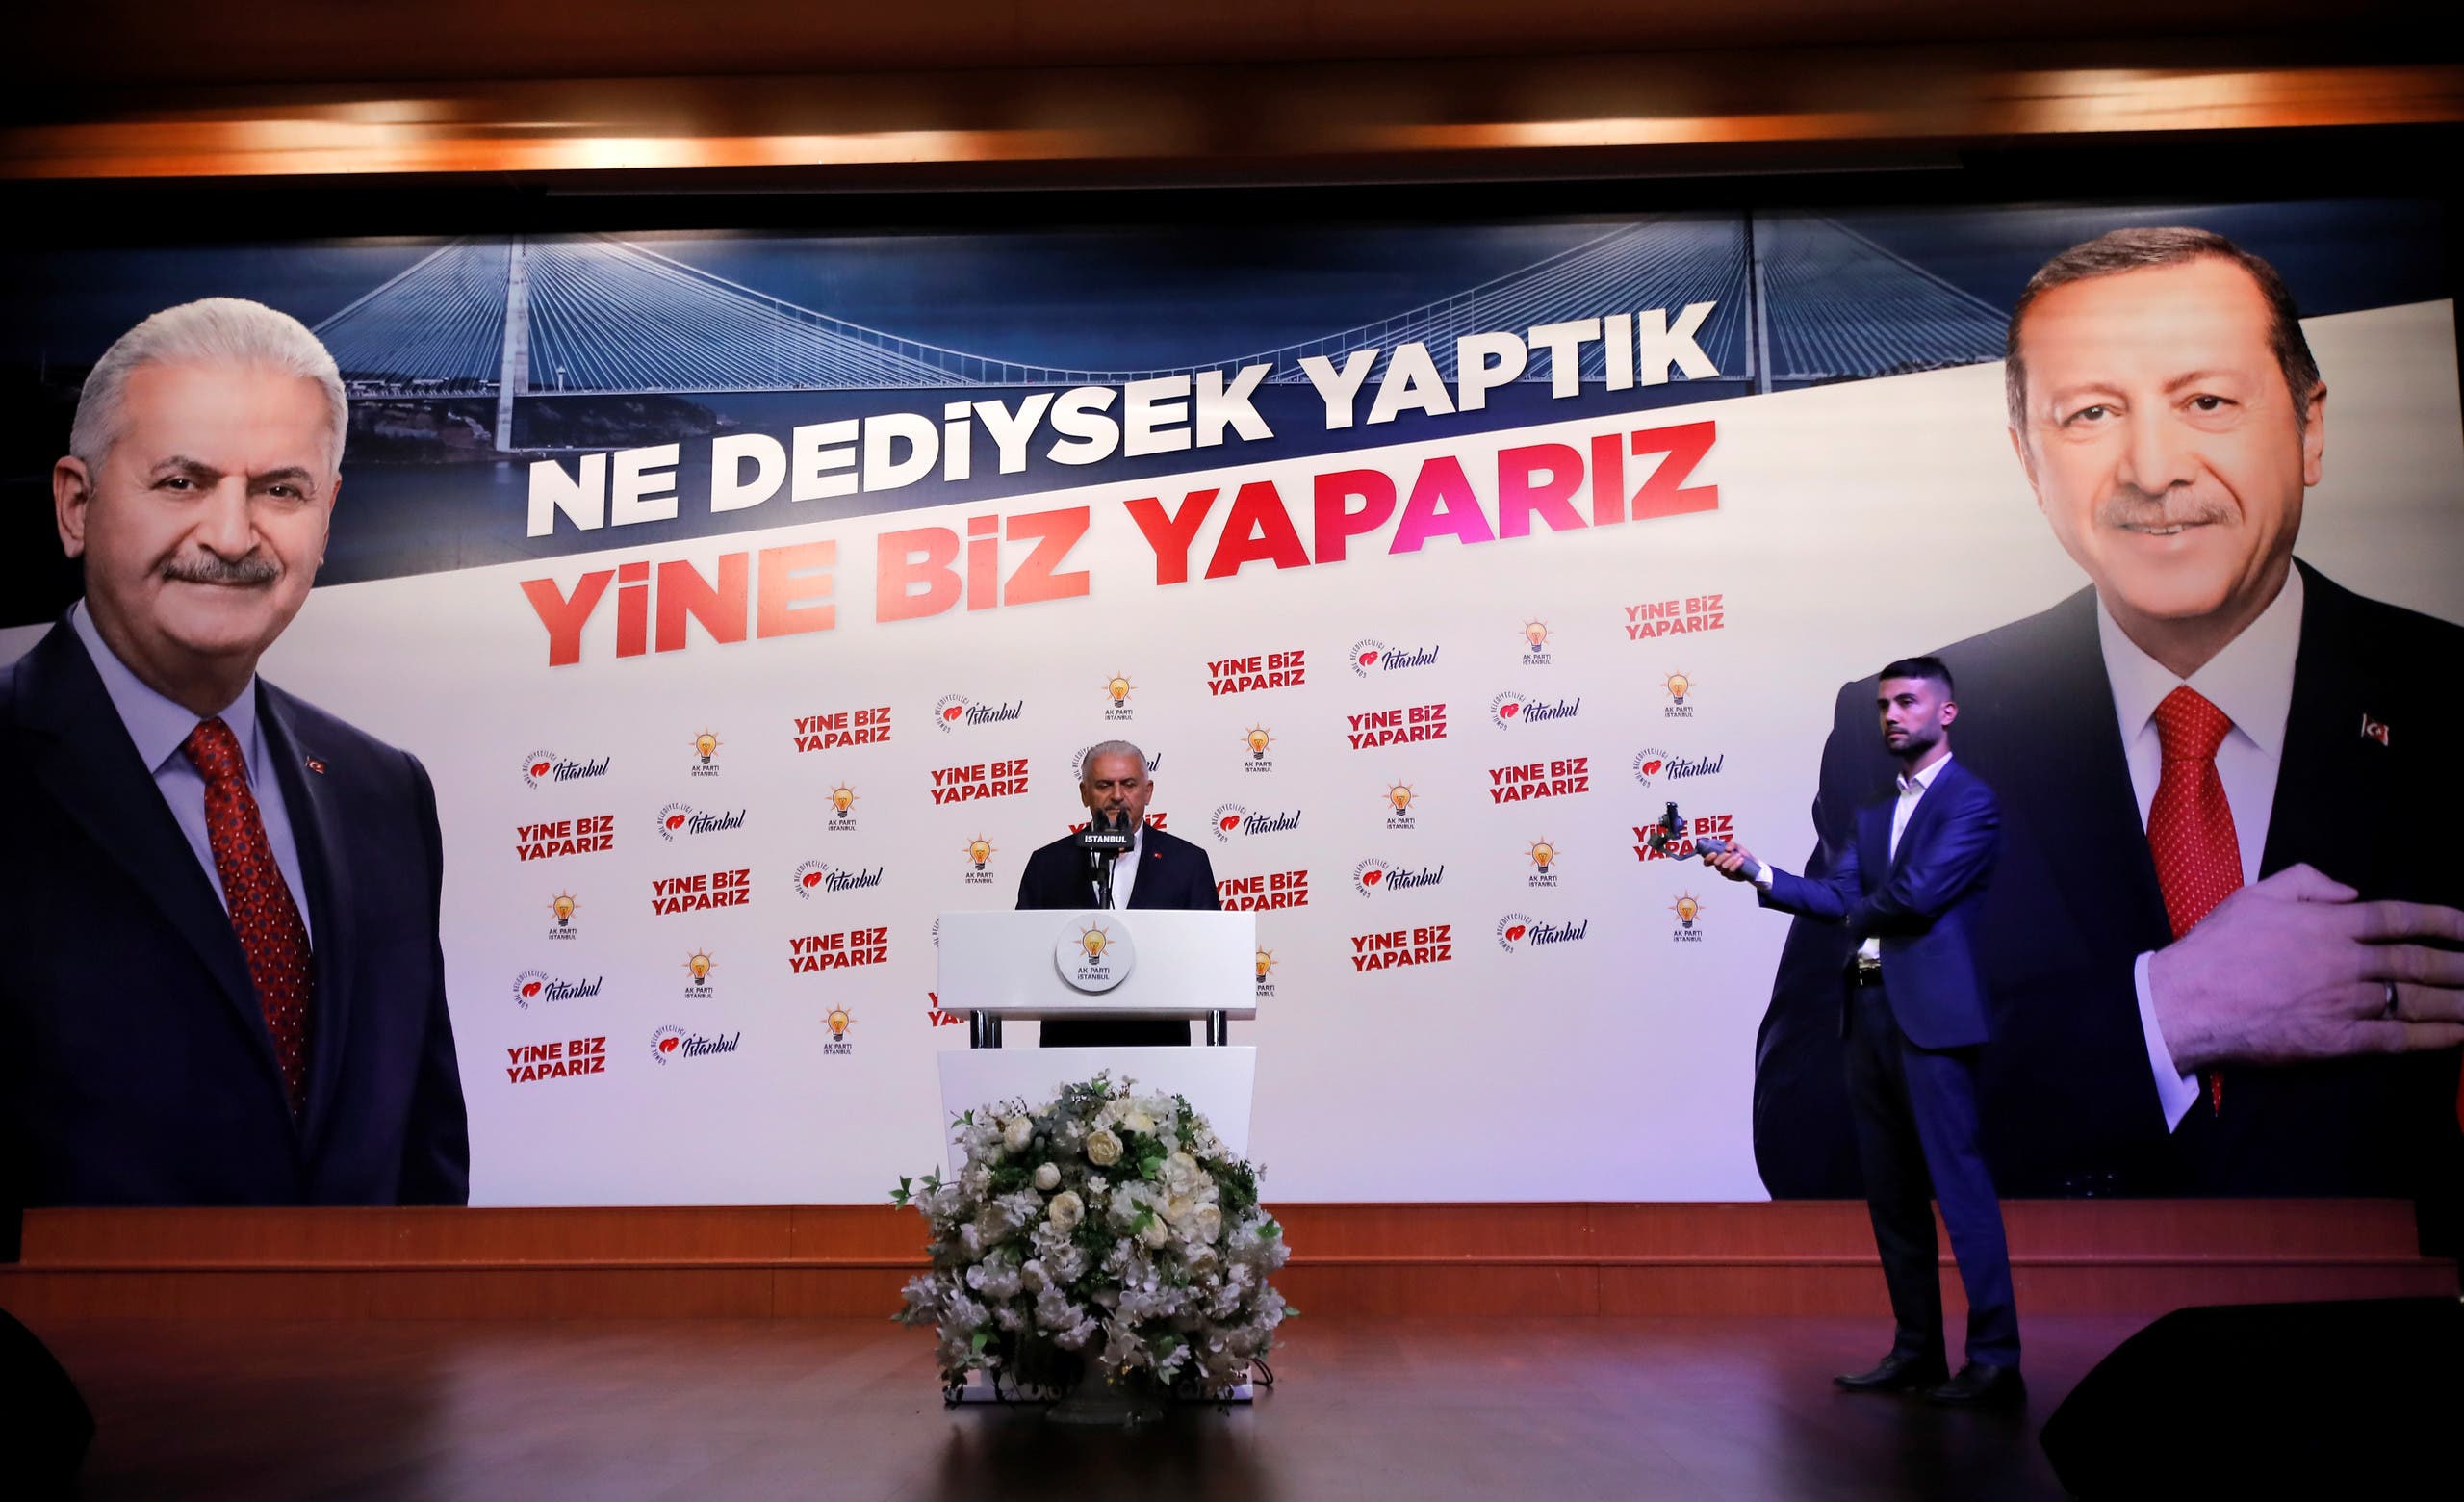 بن علي يلدريم خلال مرتمر انتخابي في يونيو 2019 في اسطنبول